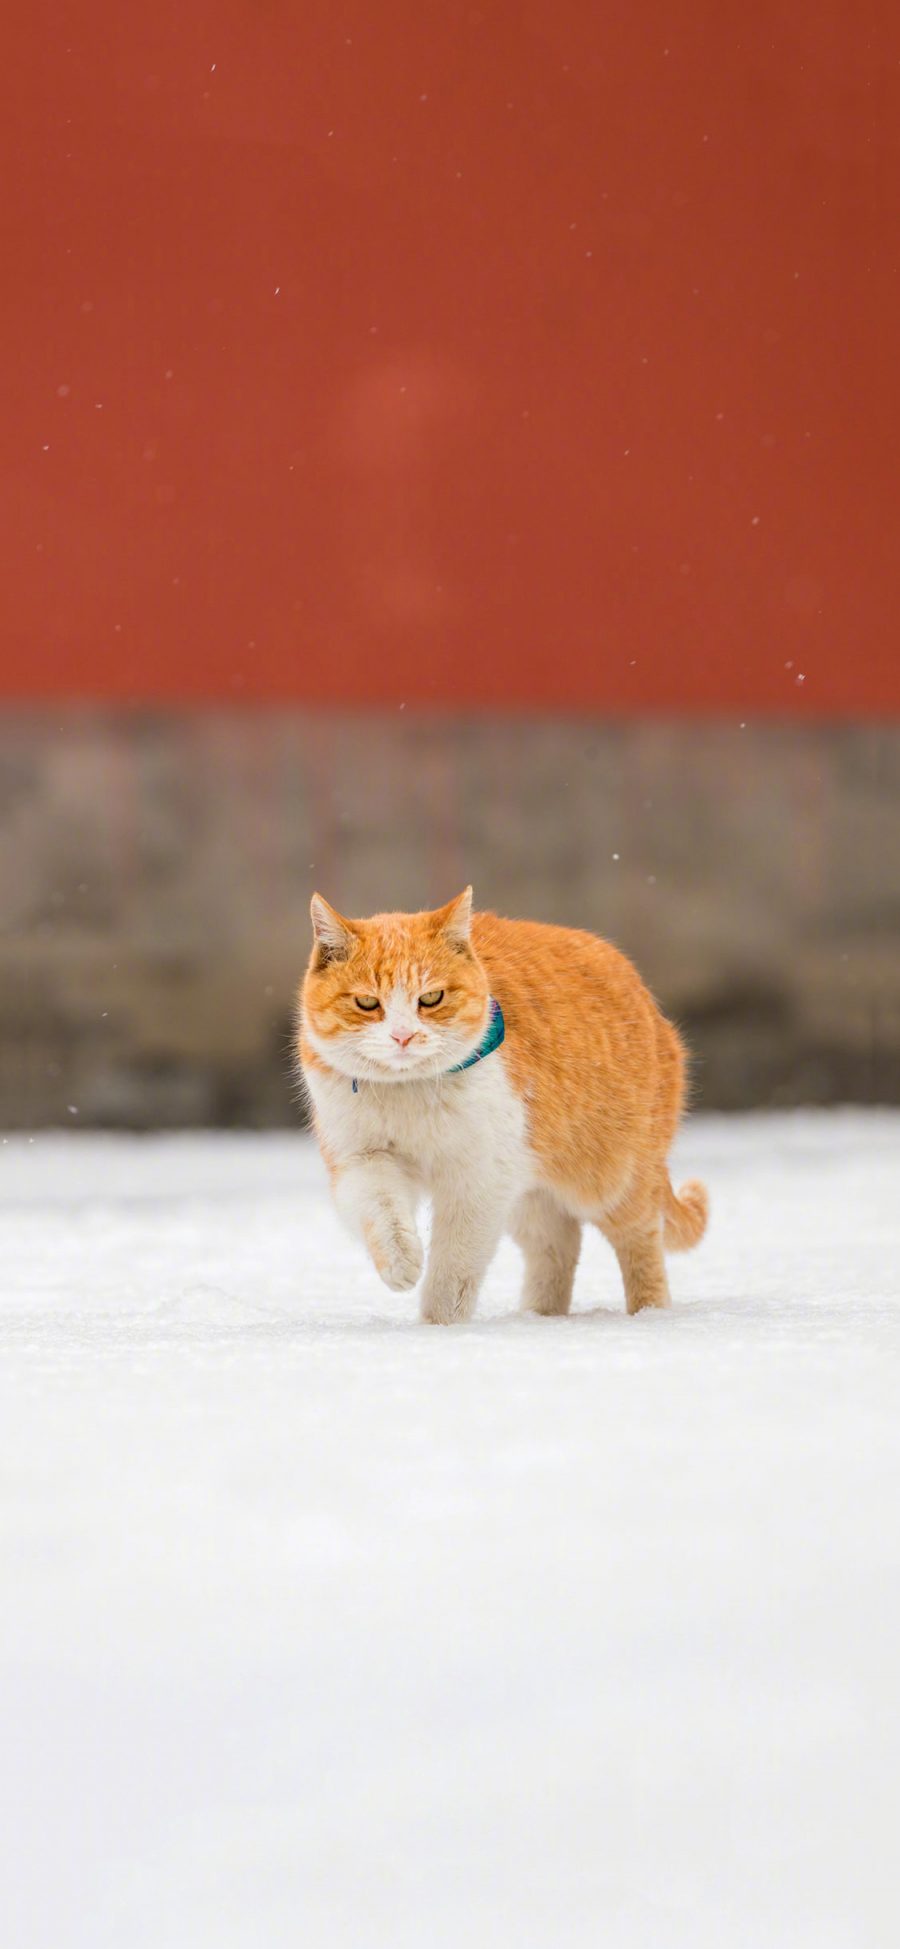 [2436×1125]猫咪 喵星人 故宫 雪地 行走 苹果手机壁纸图片